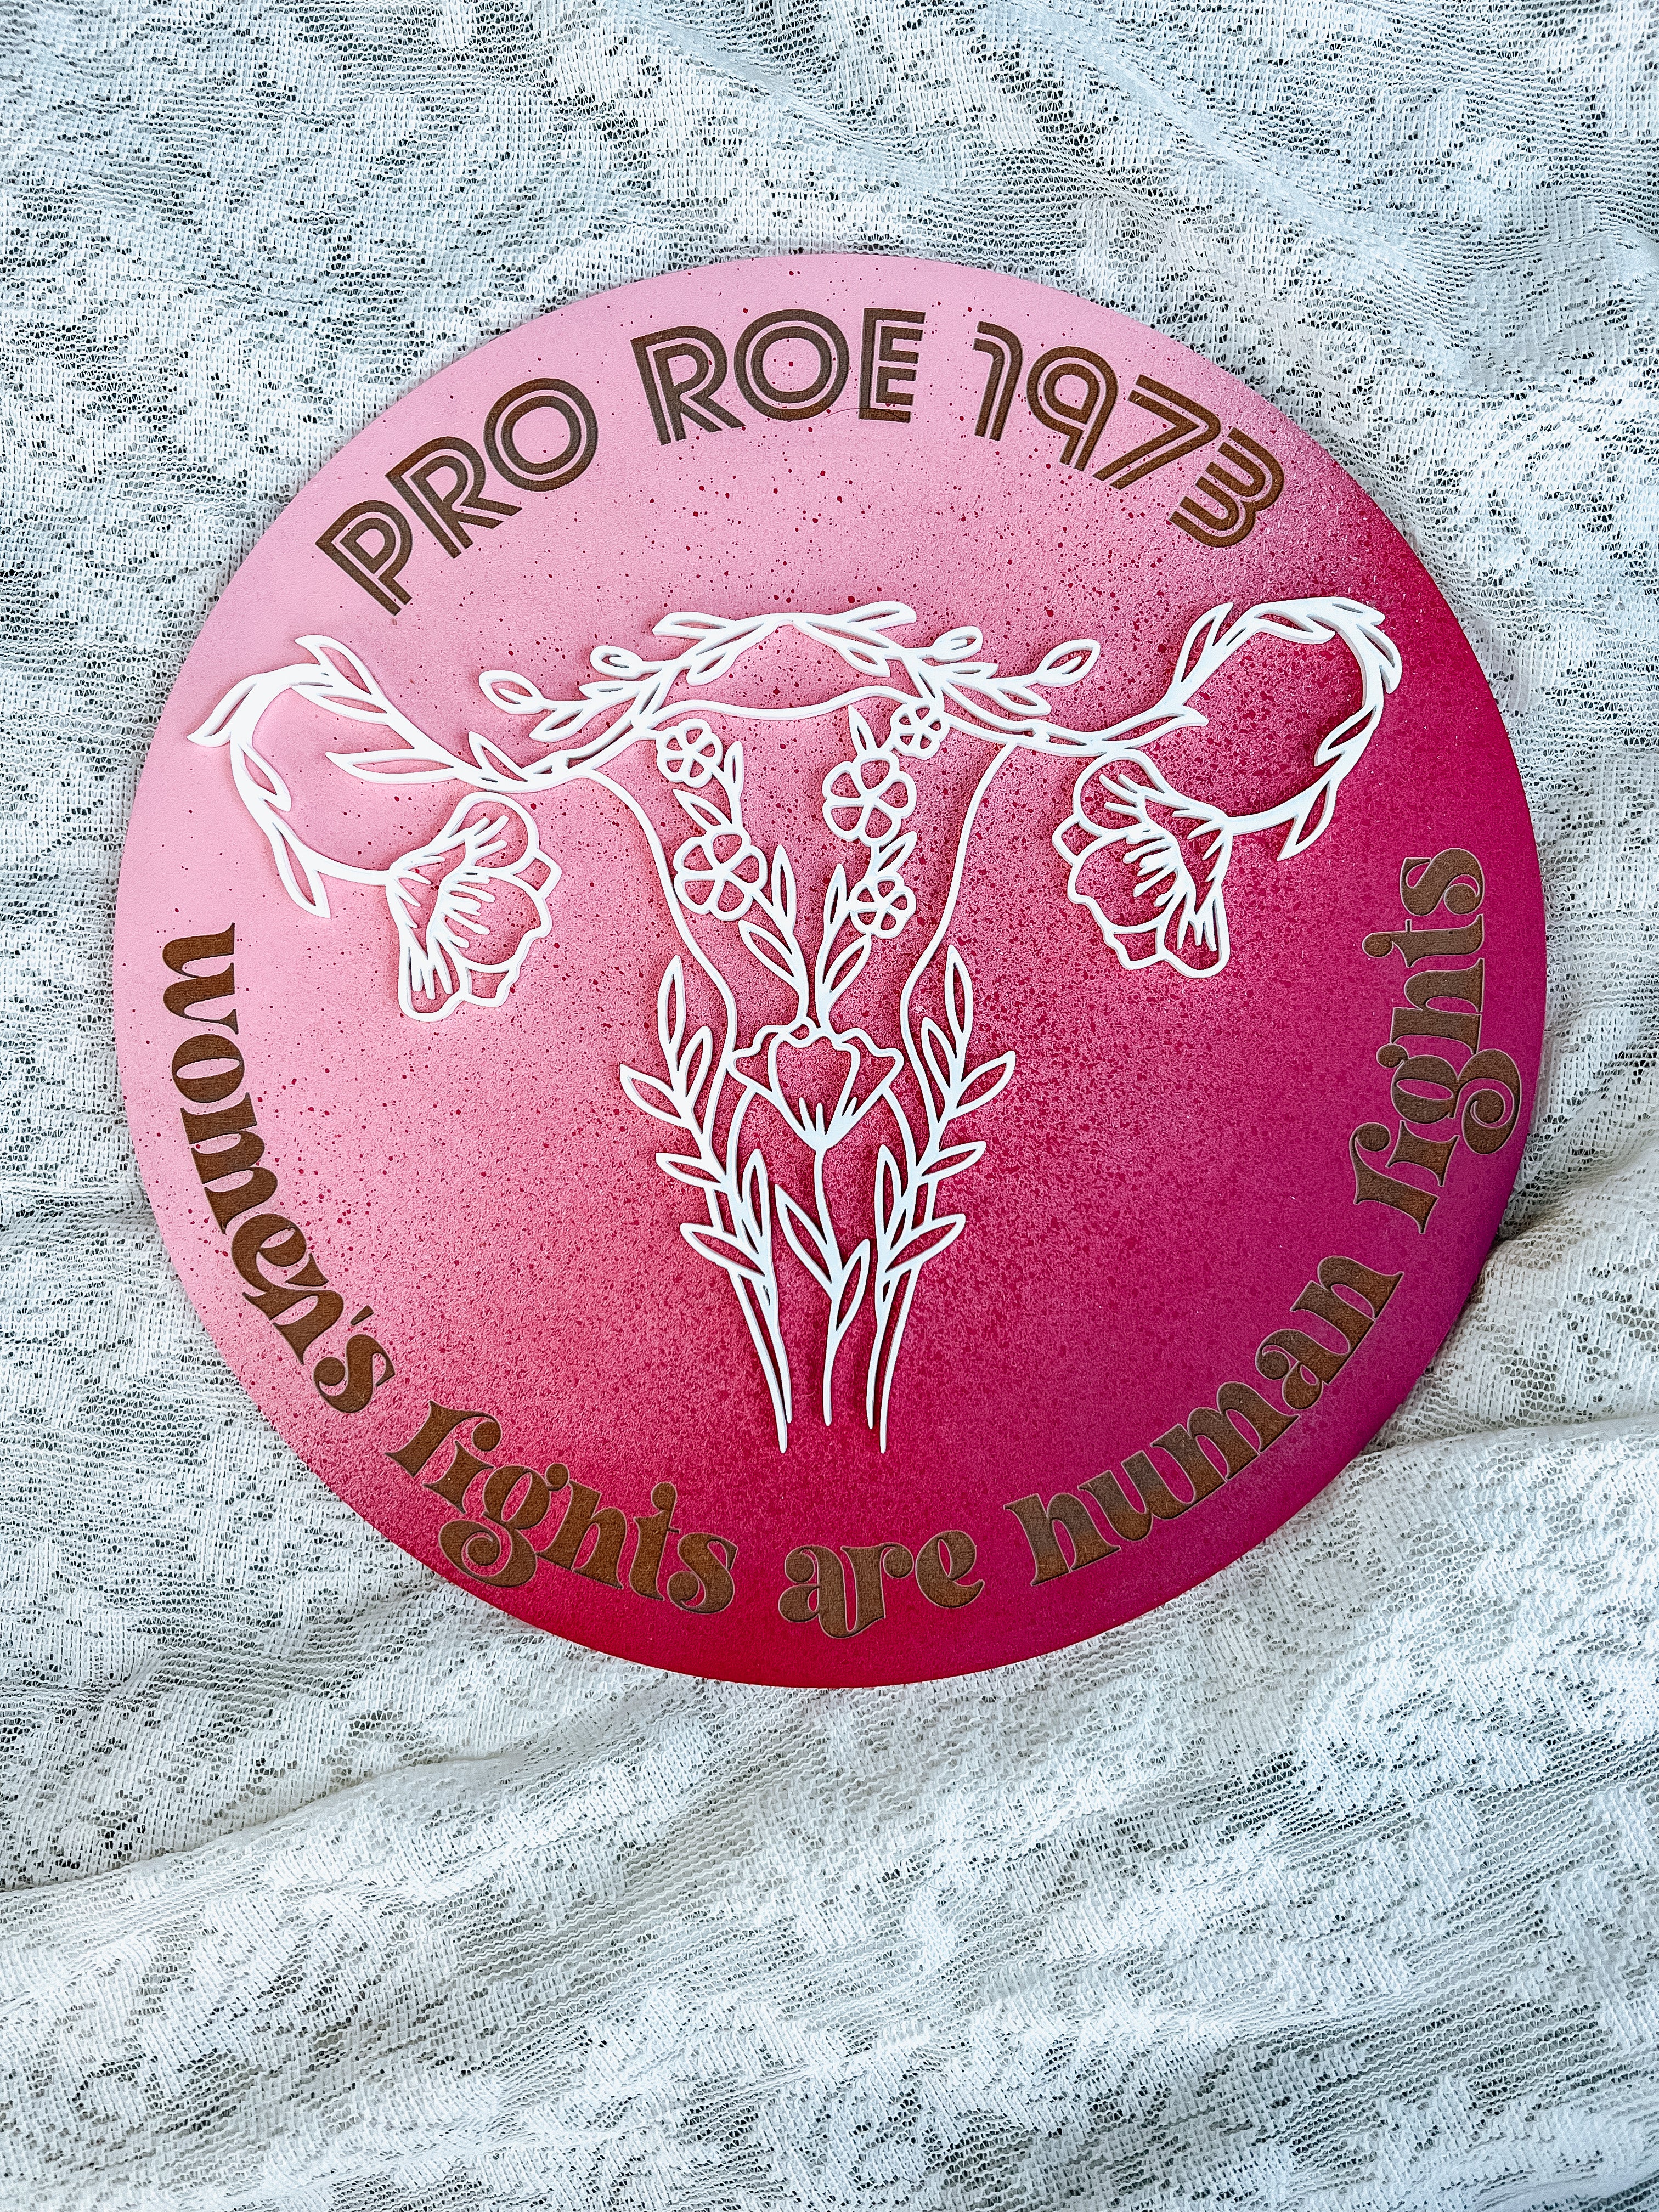 Pro Roe 1973